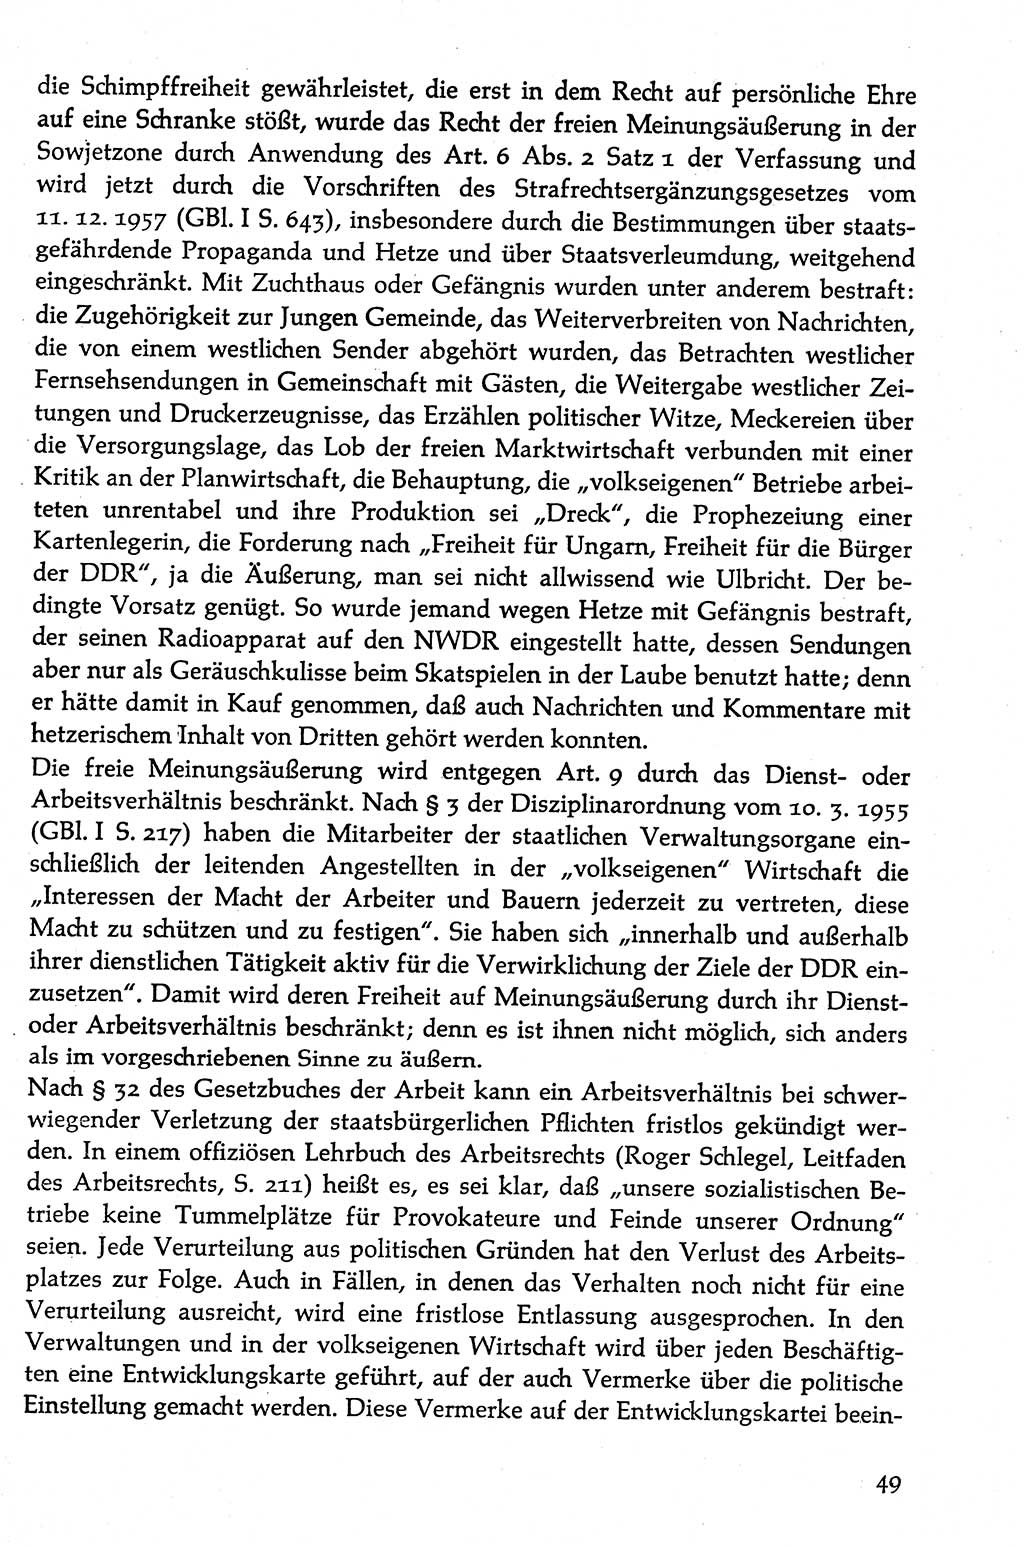 Volksdemokratische Ordnung in Mitteldeutschland [Deutsche Demokratische Republik (DDR)], Texte zur verfassungsrechtlichen Situation 1963, Seite 49 (Volksdem. Ordn. Md. DDR 1963, S. 49)